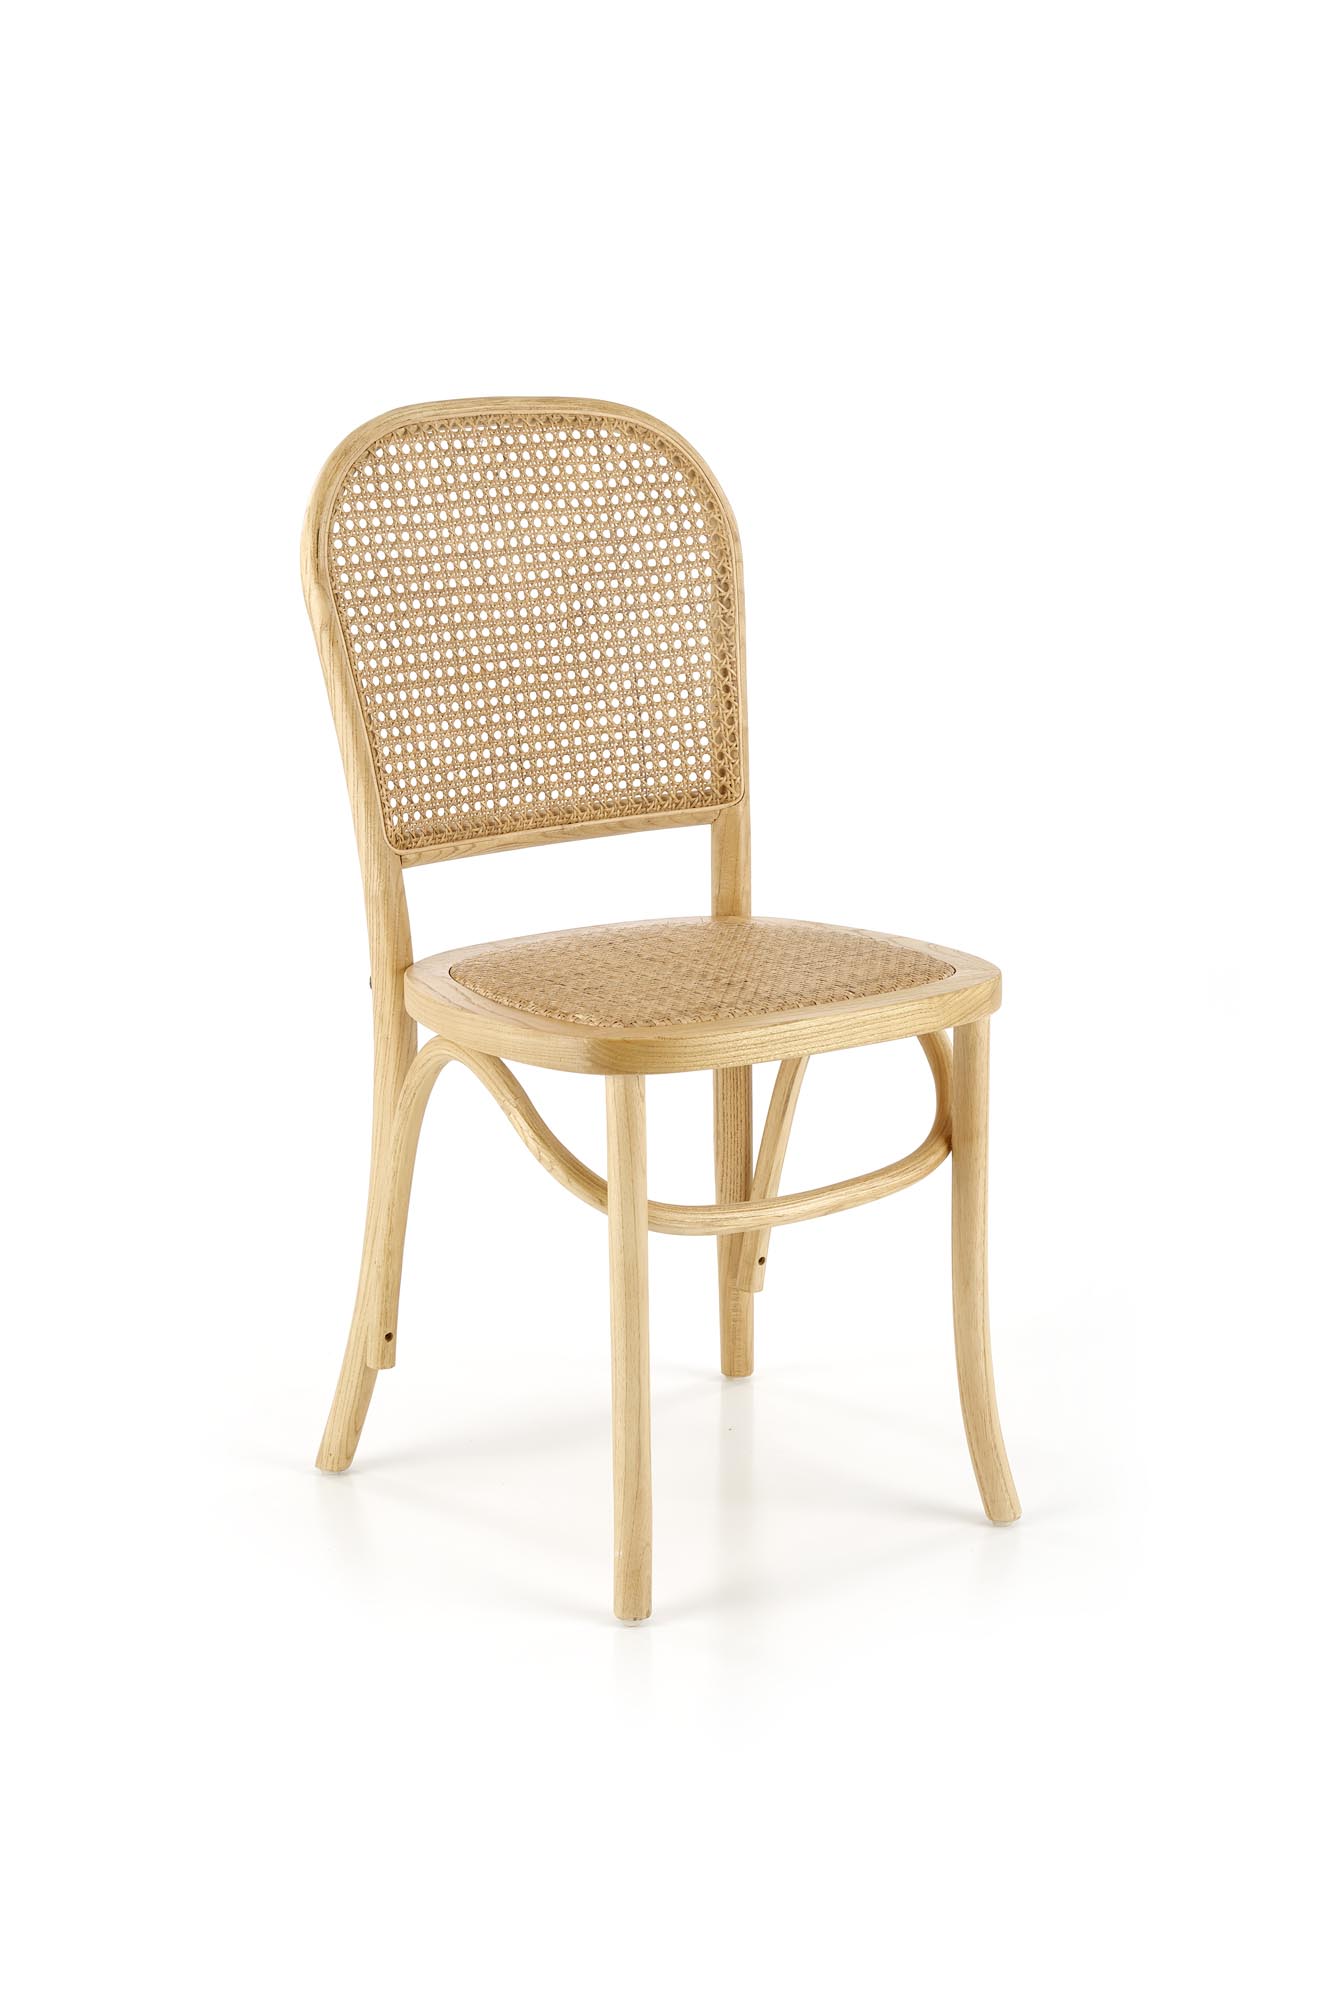 K502 Židle přírodní dřevěna židle z rattanem k502 - přírodní